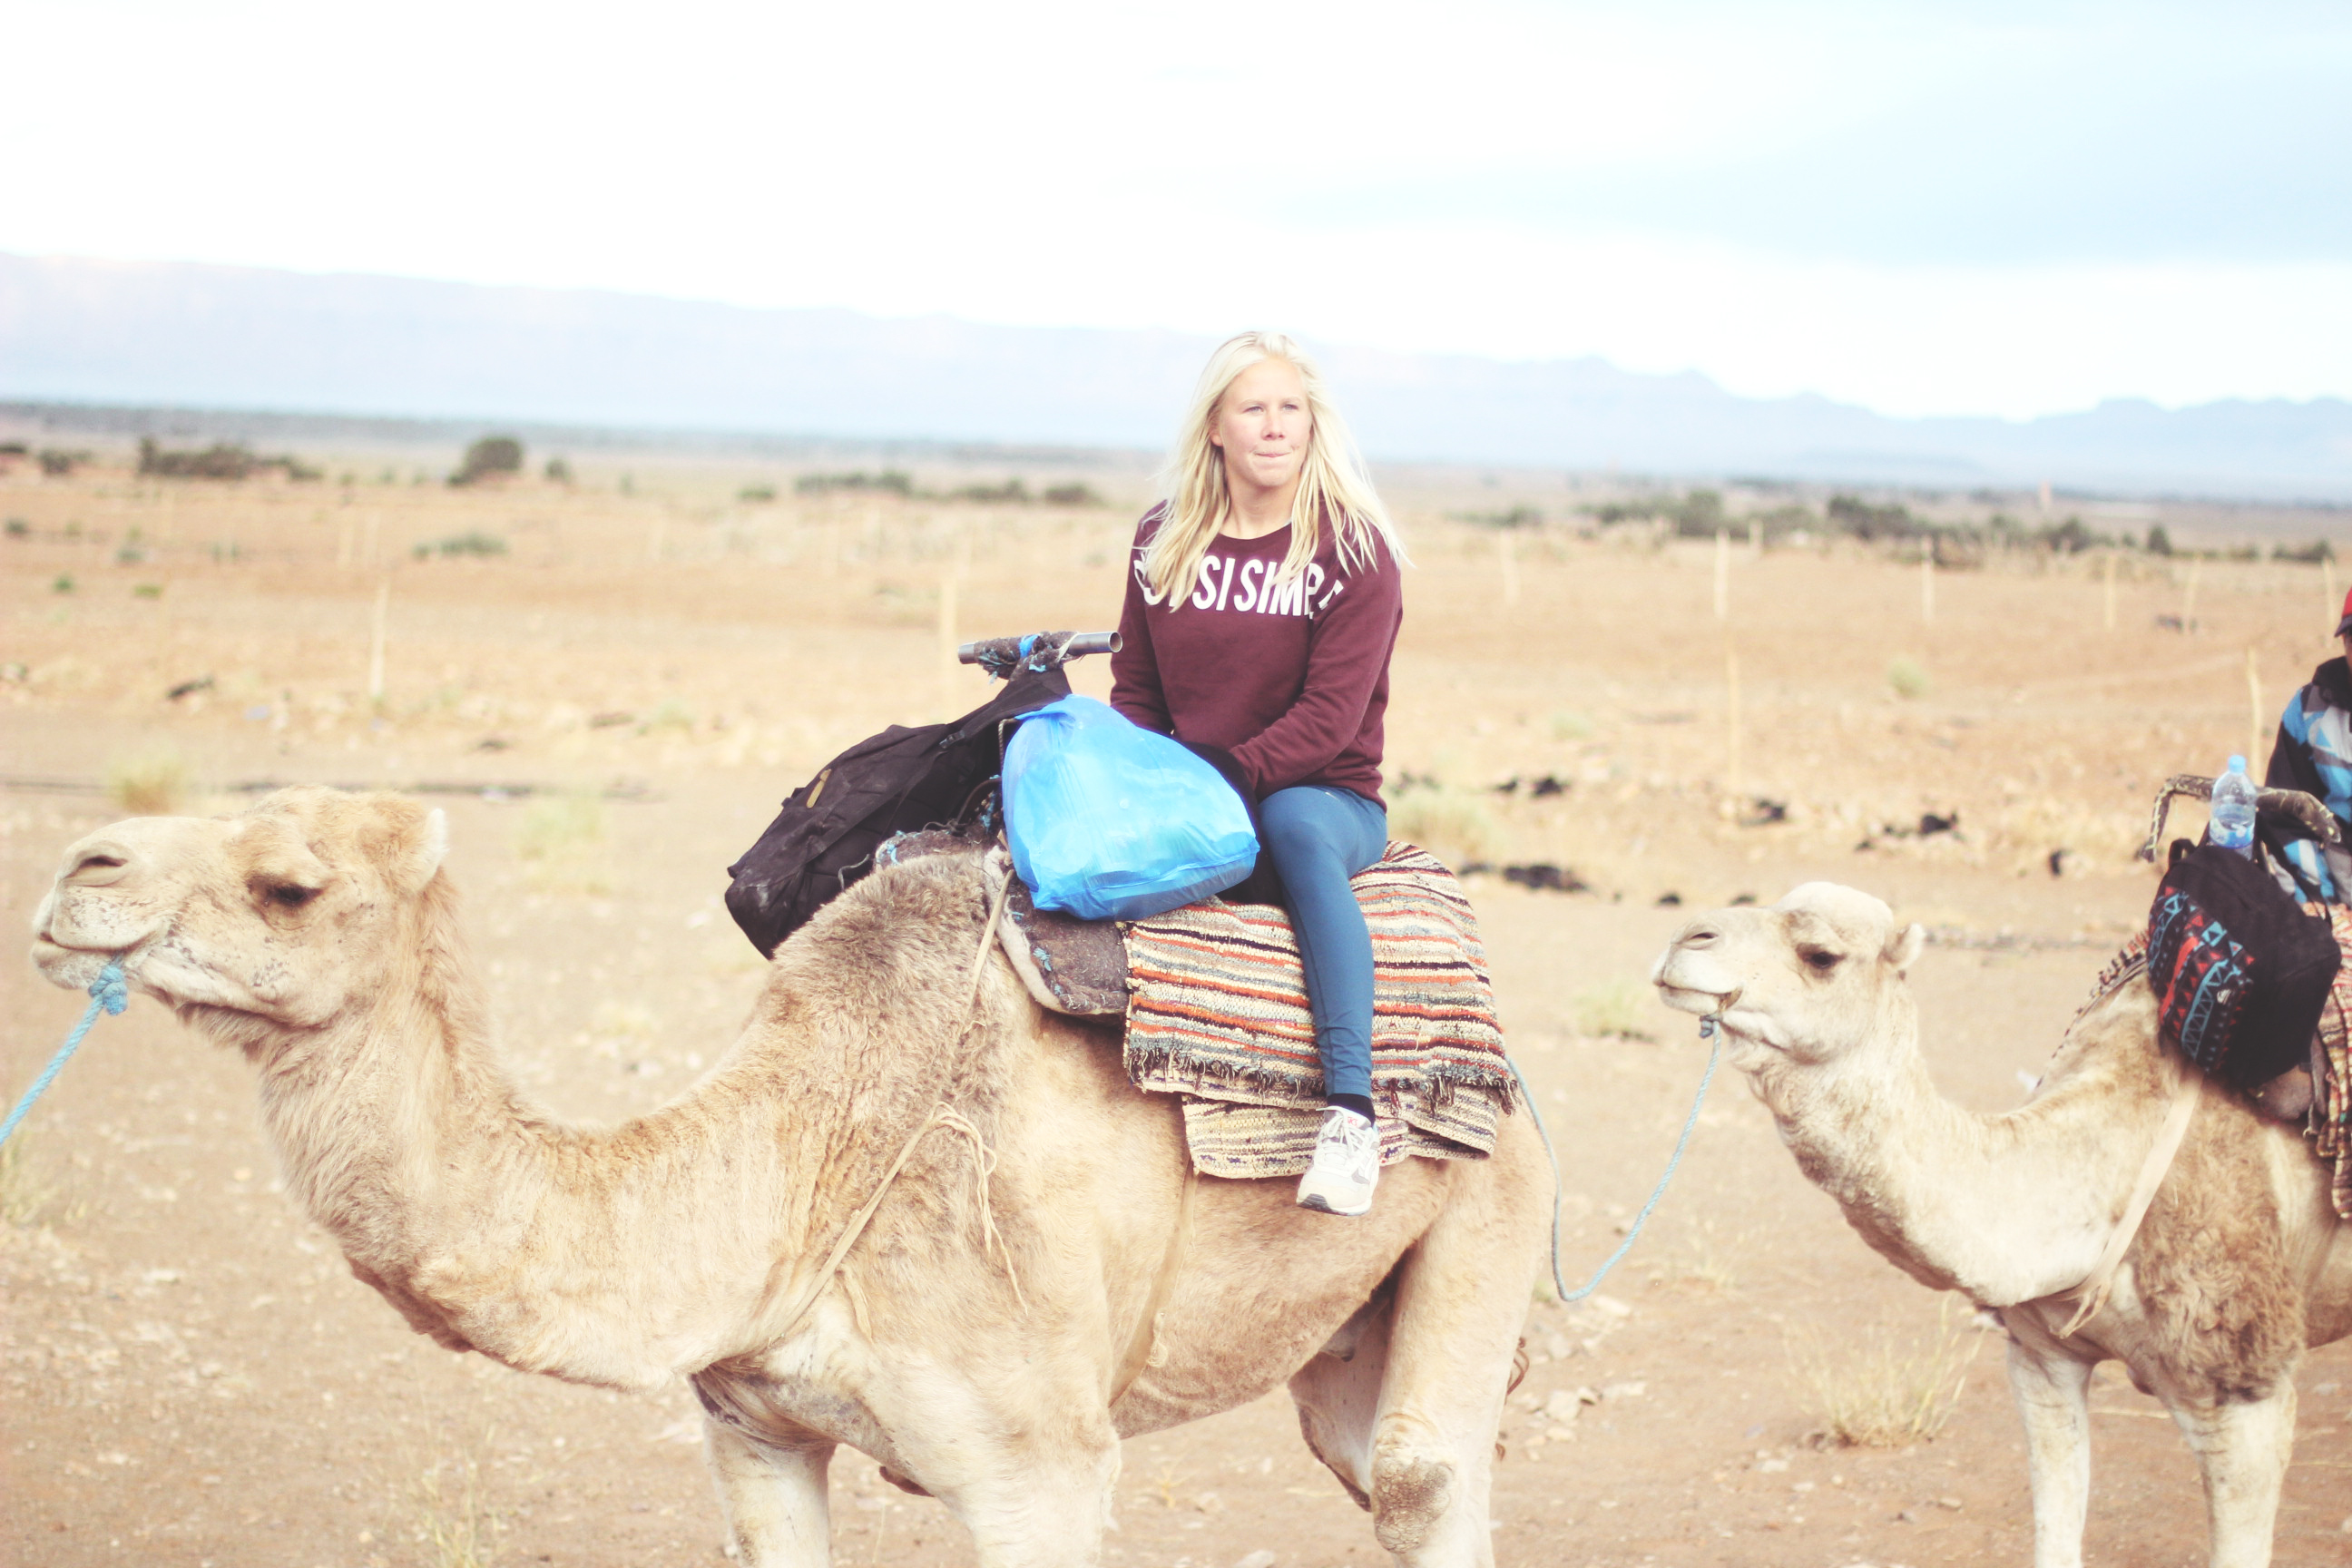 camel riding in the desert